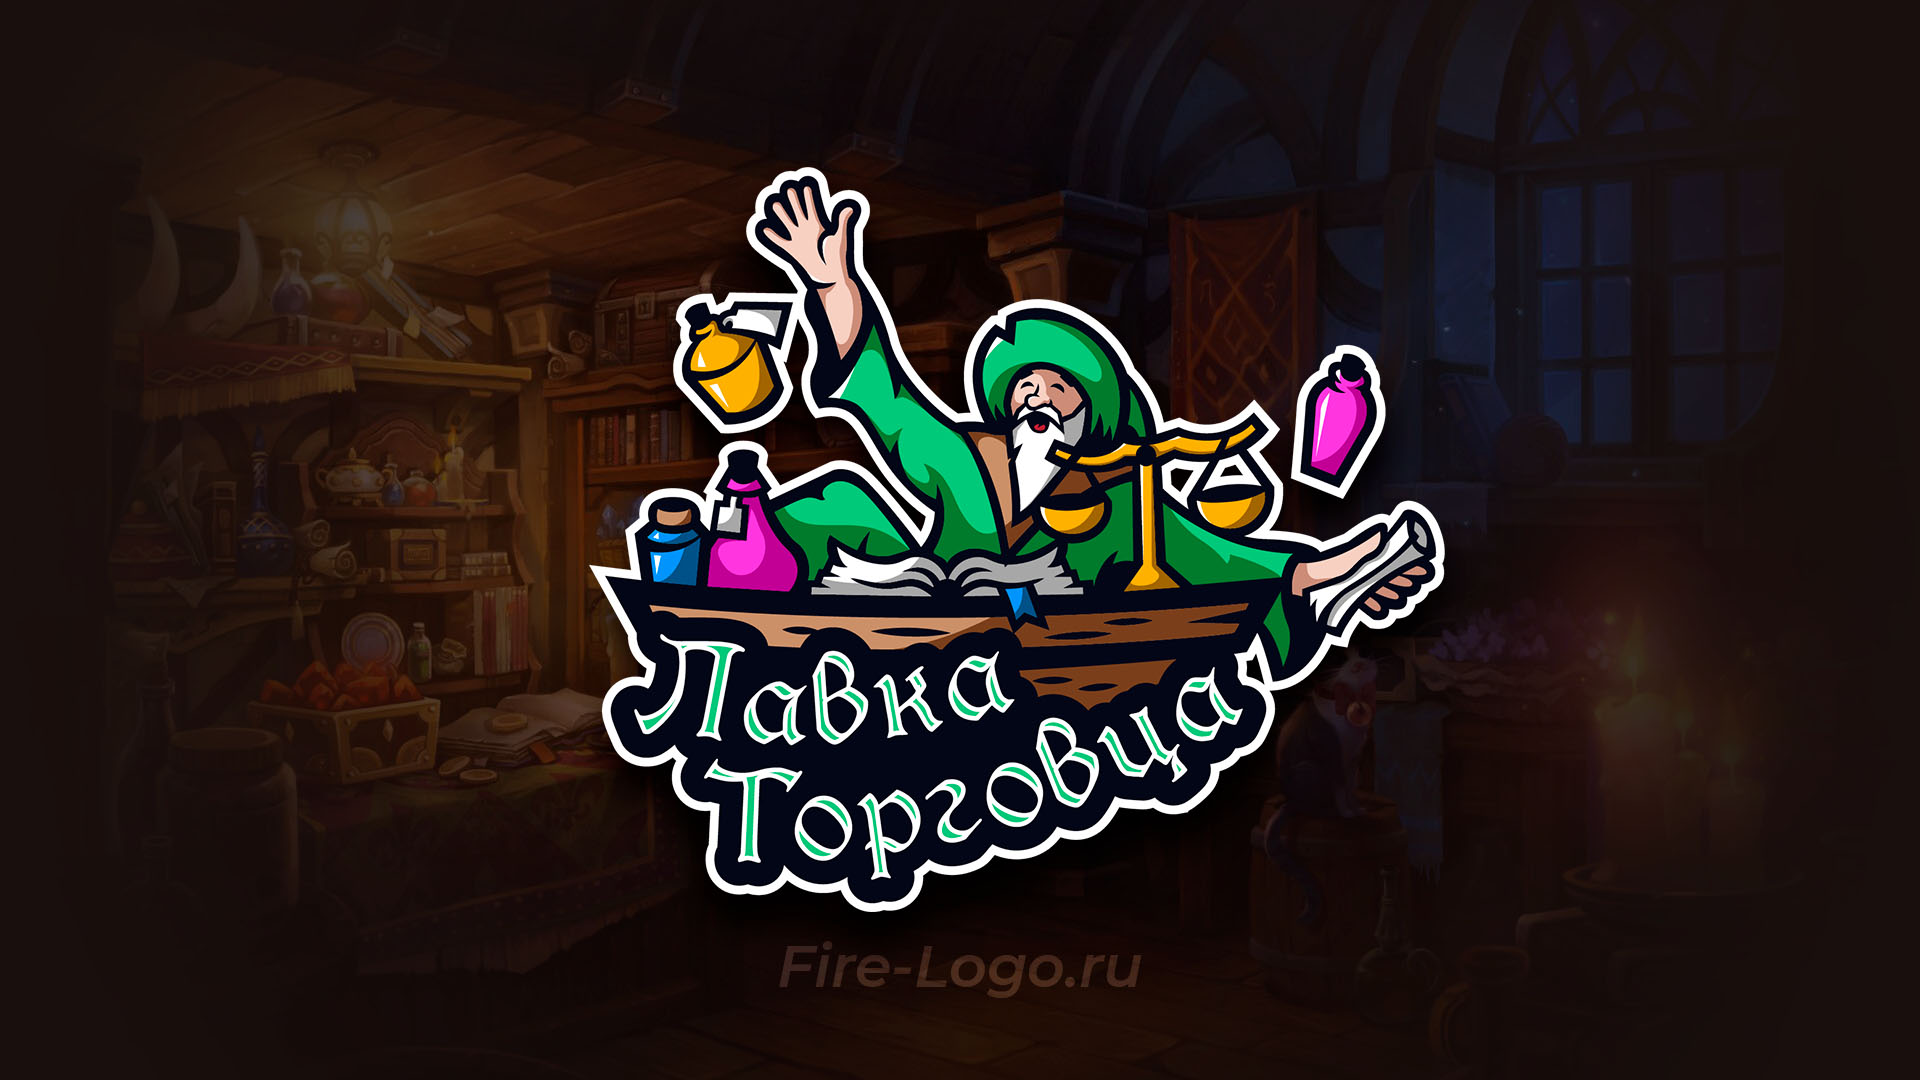 Логотип магазина мерча для настольной ролевой игры Лавка торговца